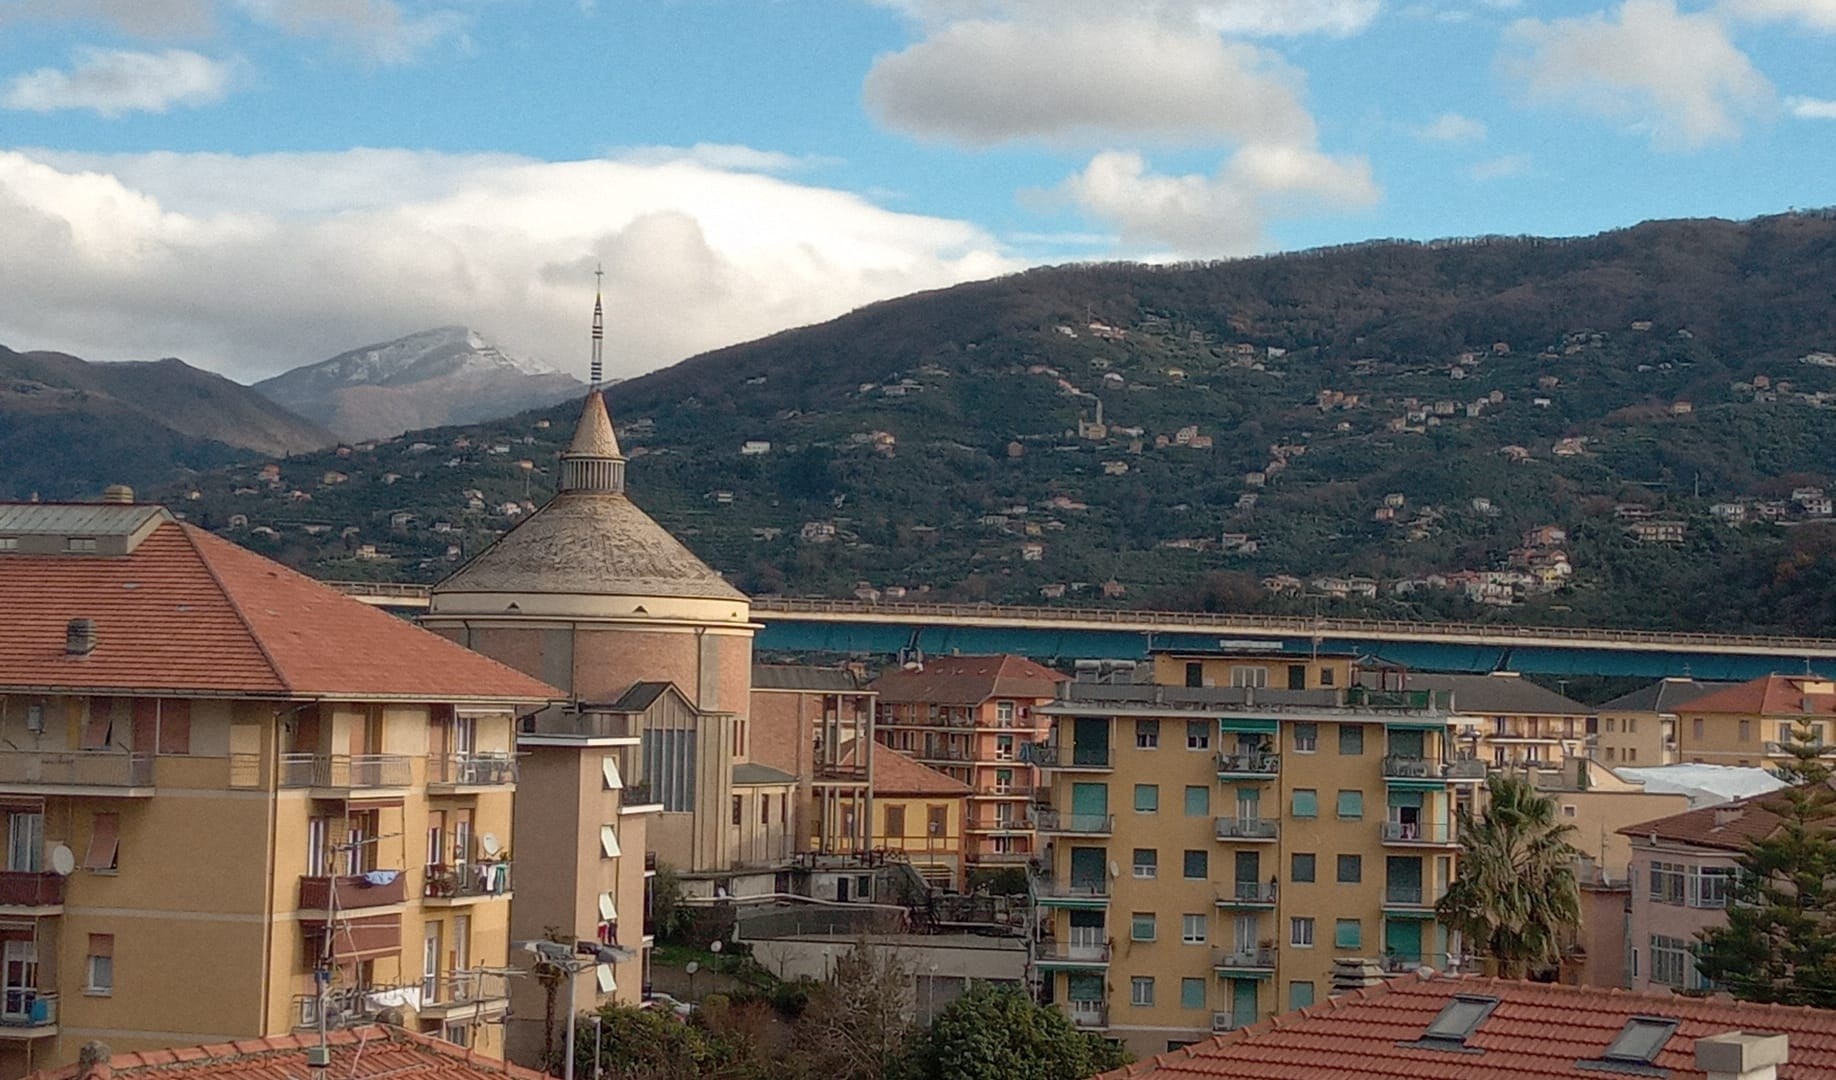 Meteo in Liguria, dopo la pioggia tempo variabile con sole e nubi: le previsioni